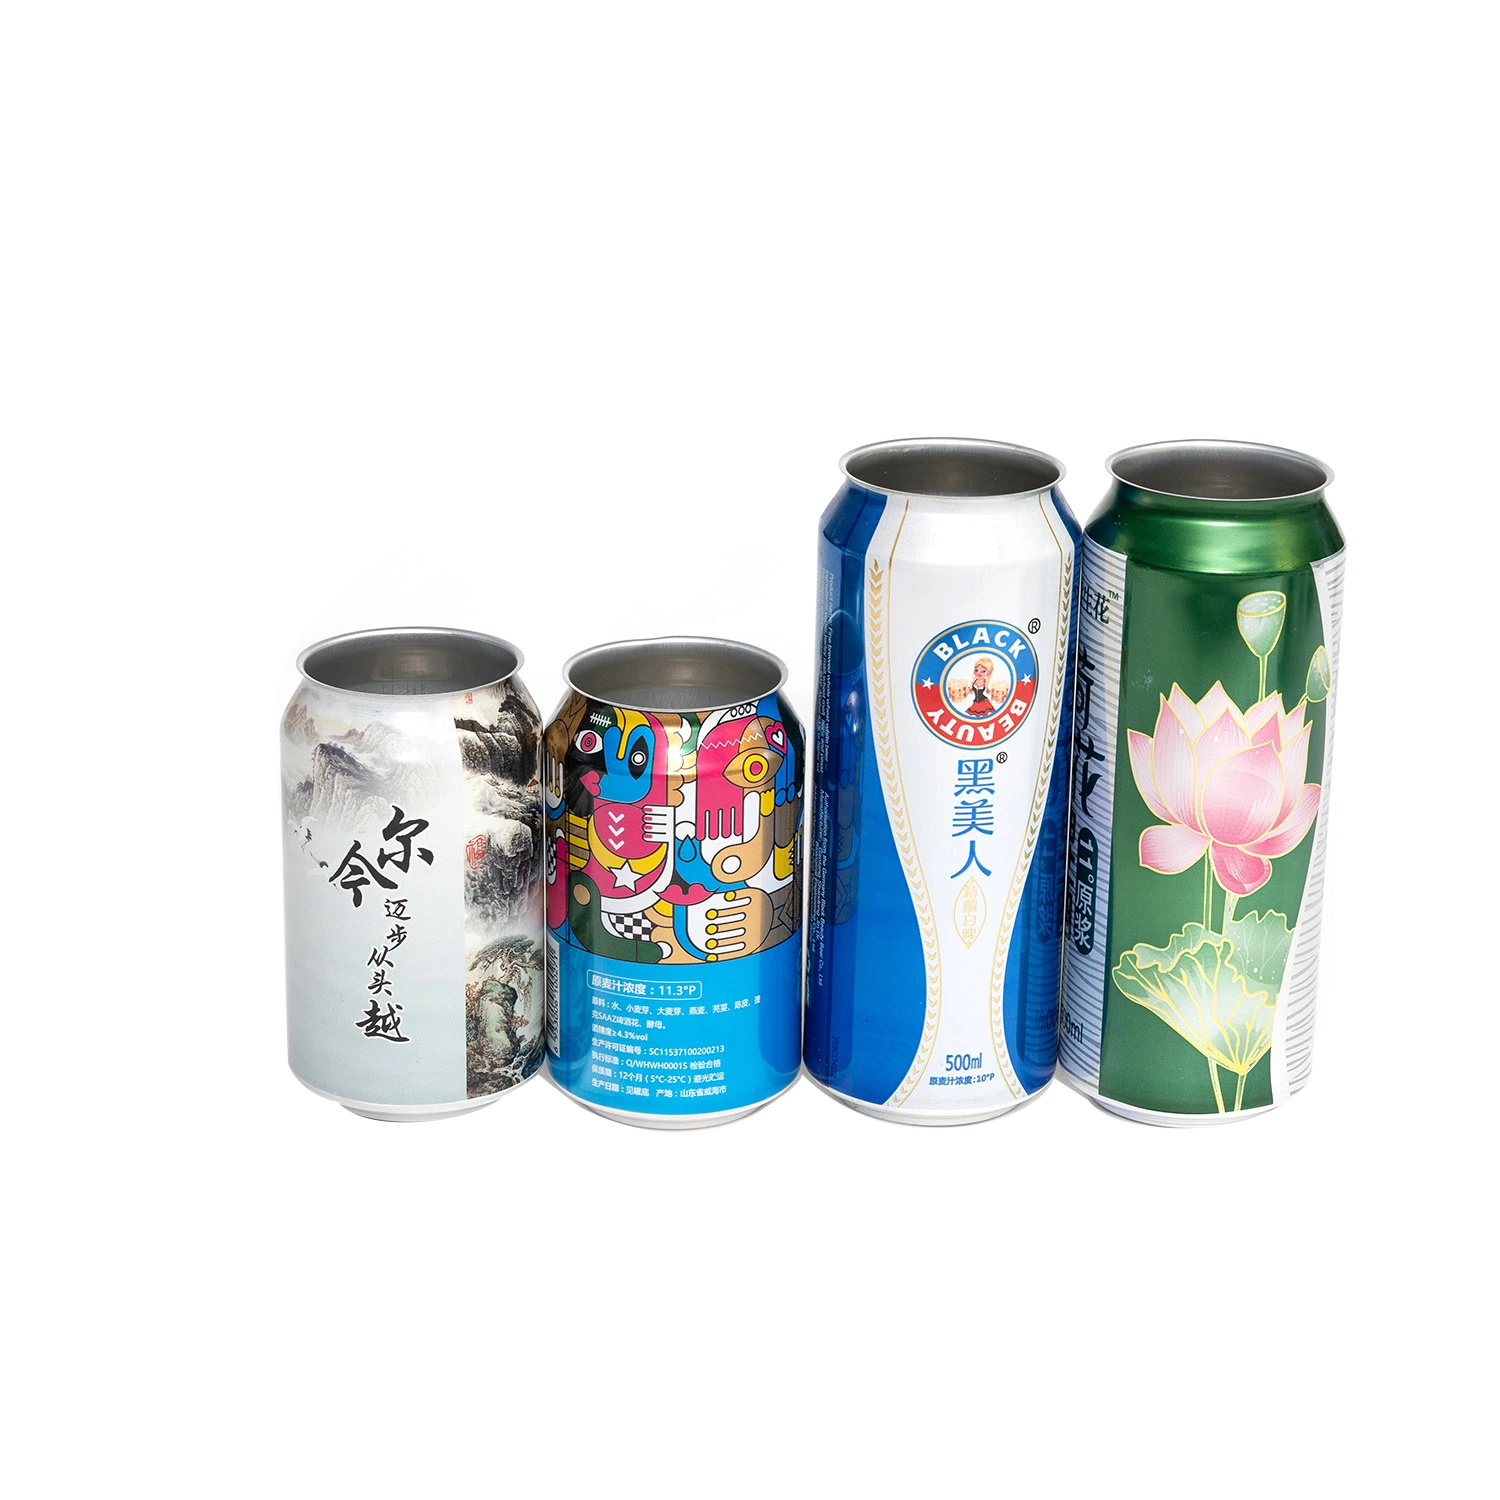 Aluminium Dose Standard Sleek 355ml Bierdosen Getränkedose für Großhandelsbrauerei mit Bpani BPA Free Liner für Sodasaft Kann